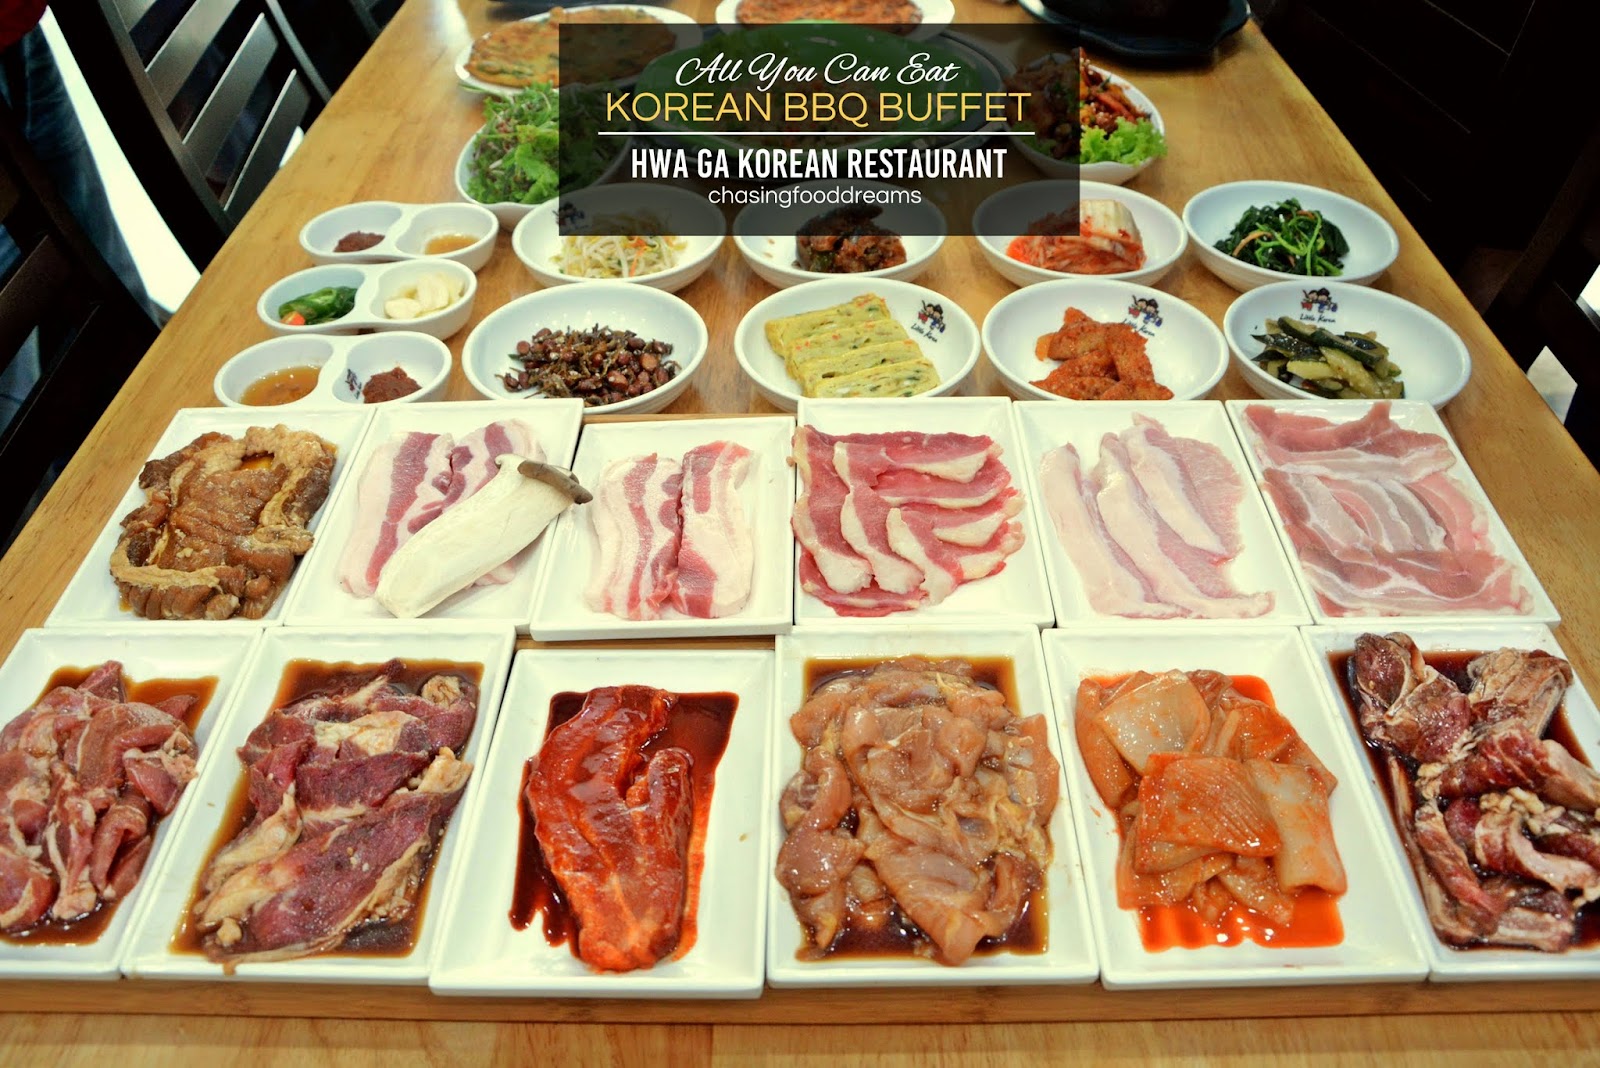 Korean Bbq Buffet Pj / All You Can Eat Korean BBQ Buffet at RM 39